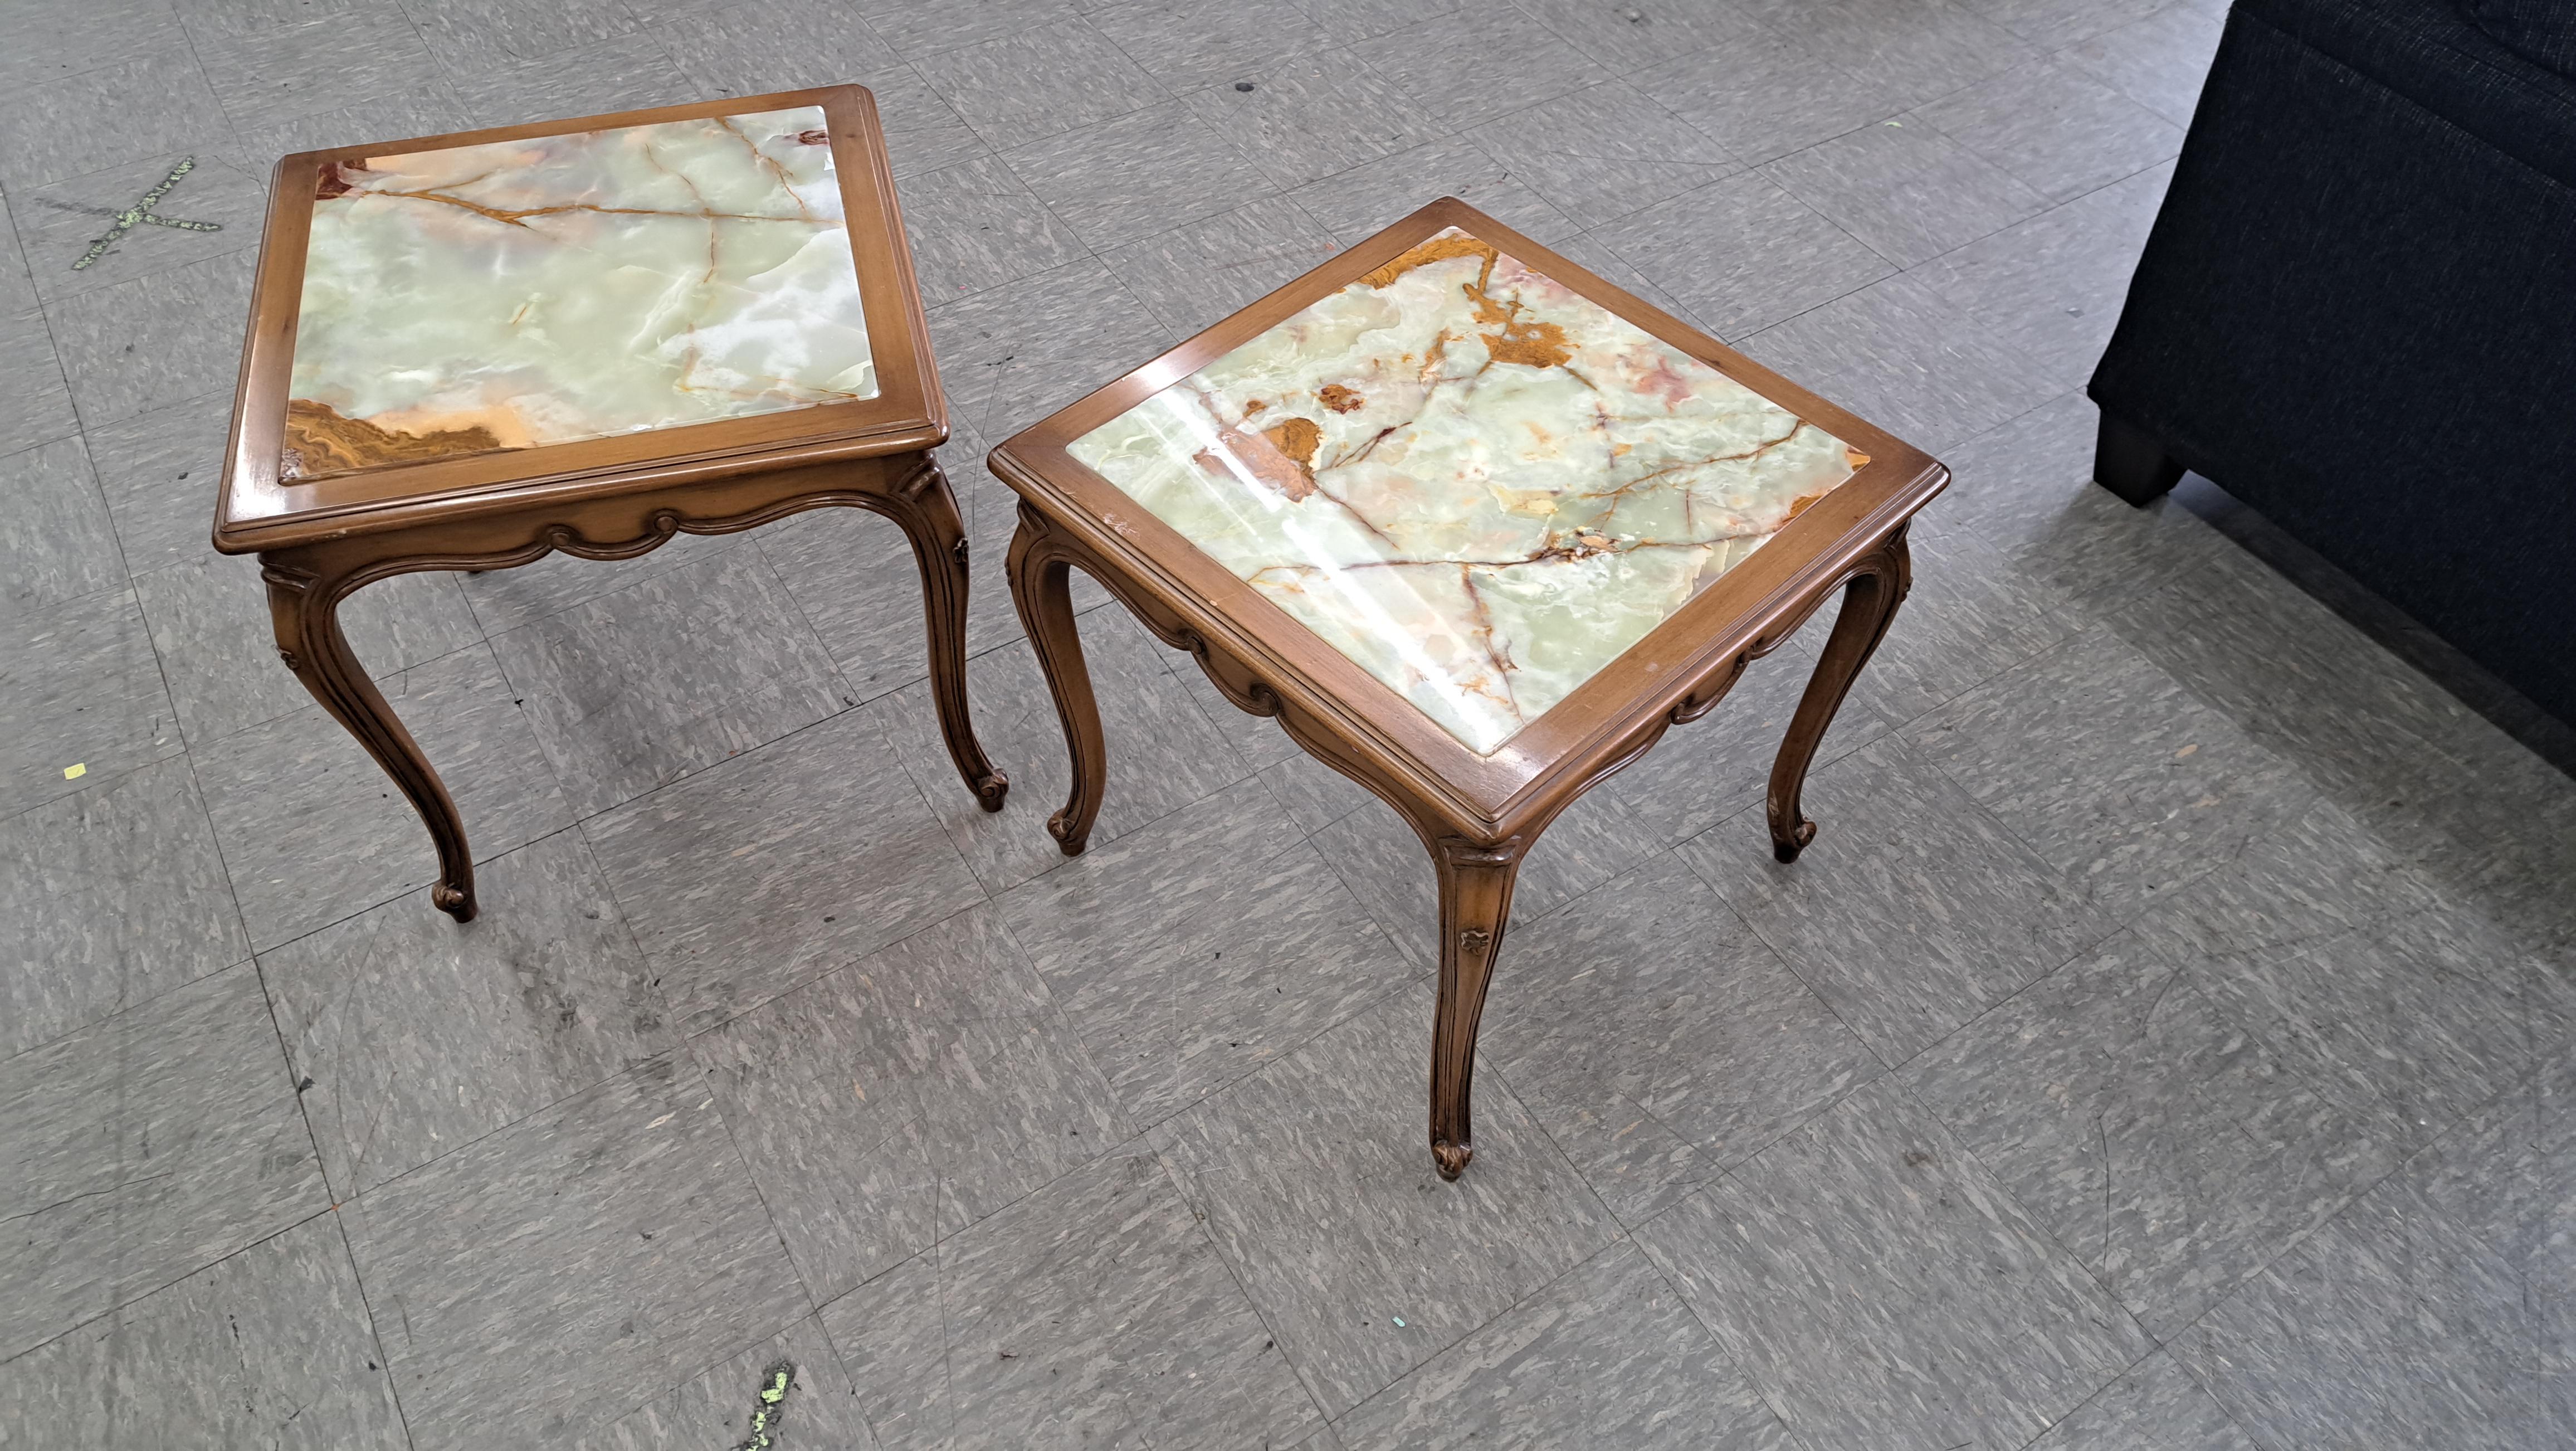 Ein Paar Beistelltische aus geschnitztem Holz mit Marmoreinlagen. Tische im Stil von Louis XV mit elegant geschnitzten Beinen und verschnörkeltem Holz, das die Fliesenplatten einrahmt.